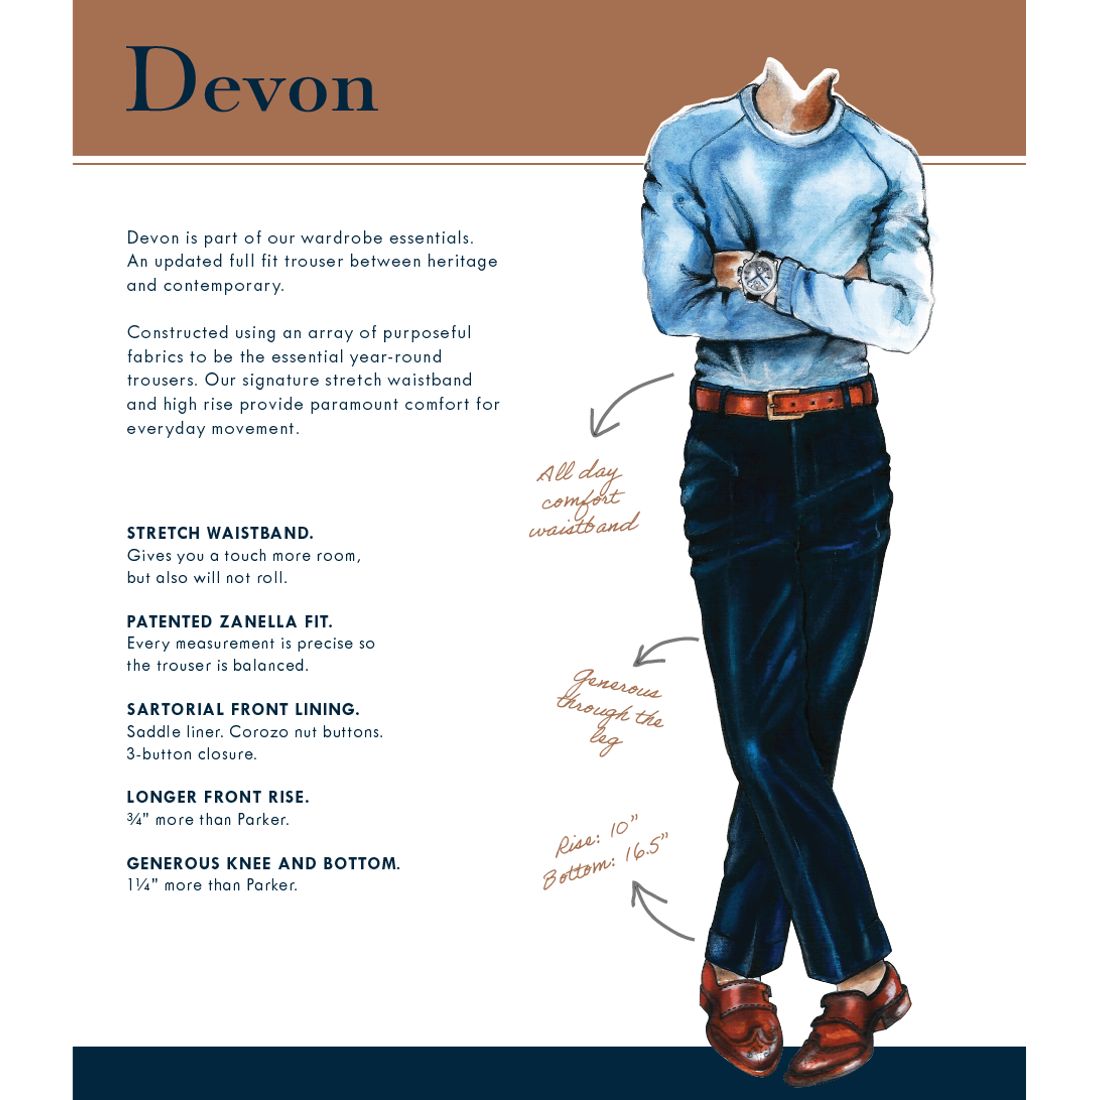 Devon Flat Front Sharkskin Wool Trouser in Medium Grey (Modern Full Fit) by Zanella